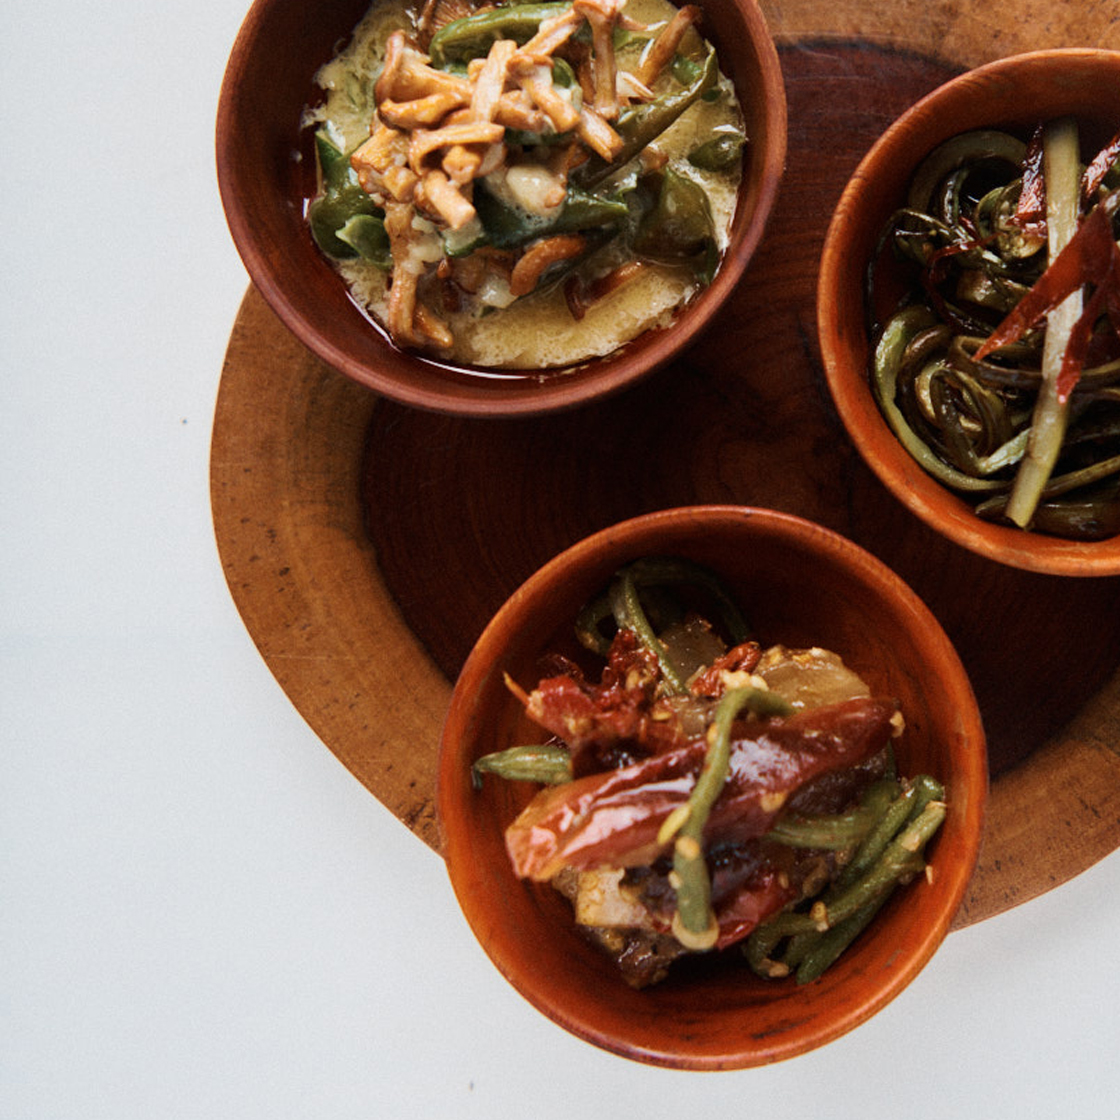 Bhutan food bowls